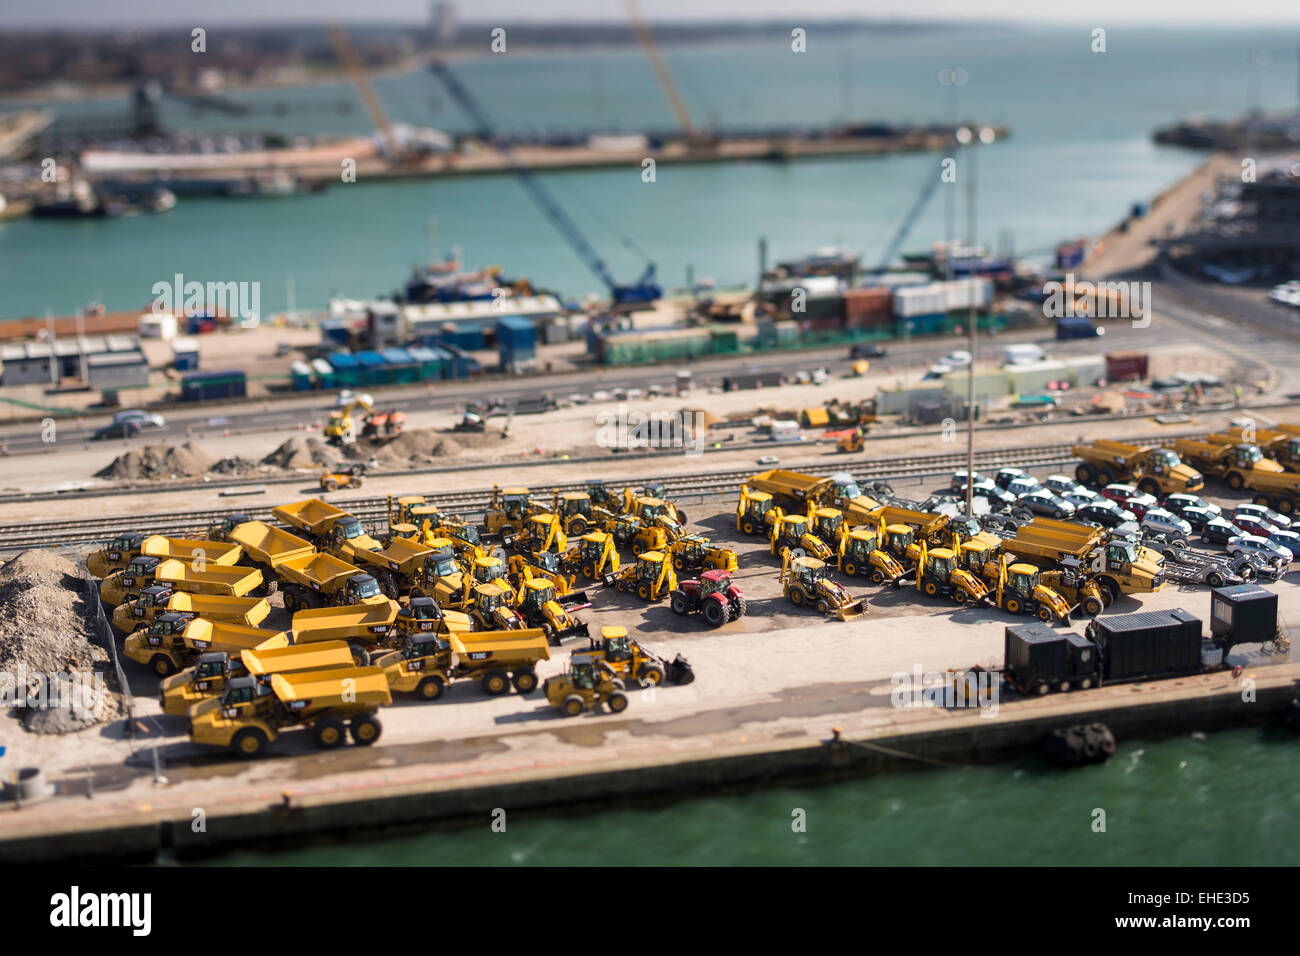 Southamptons Eastern Docks, Blick nach Süden. Bild zeigt Autos und JCB ist Export erwartet. Bild Datum: Samstag, 7. März 2015. Stockfoto